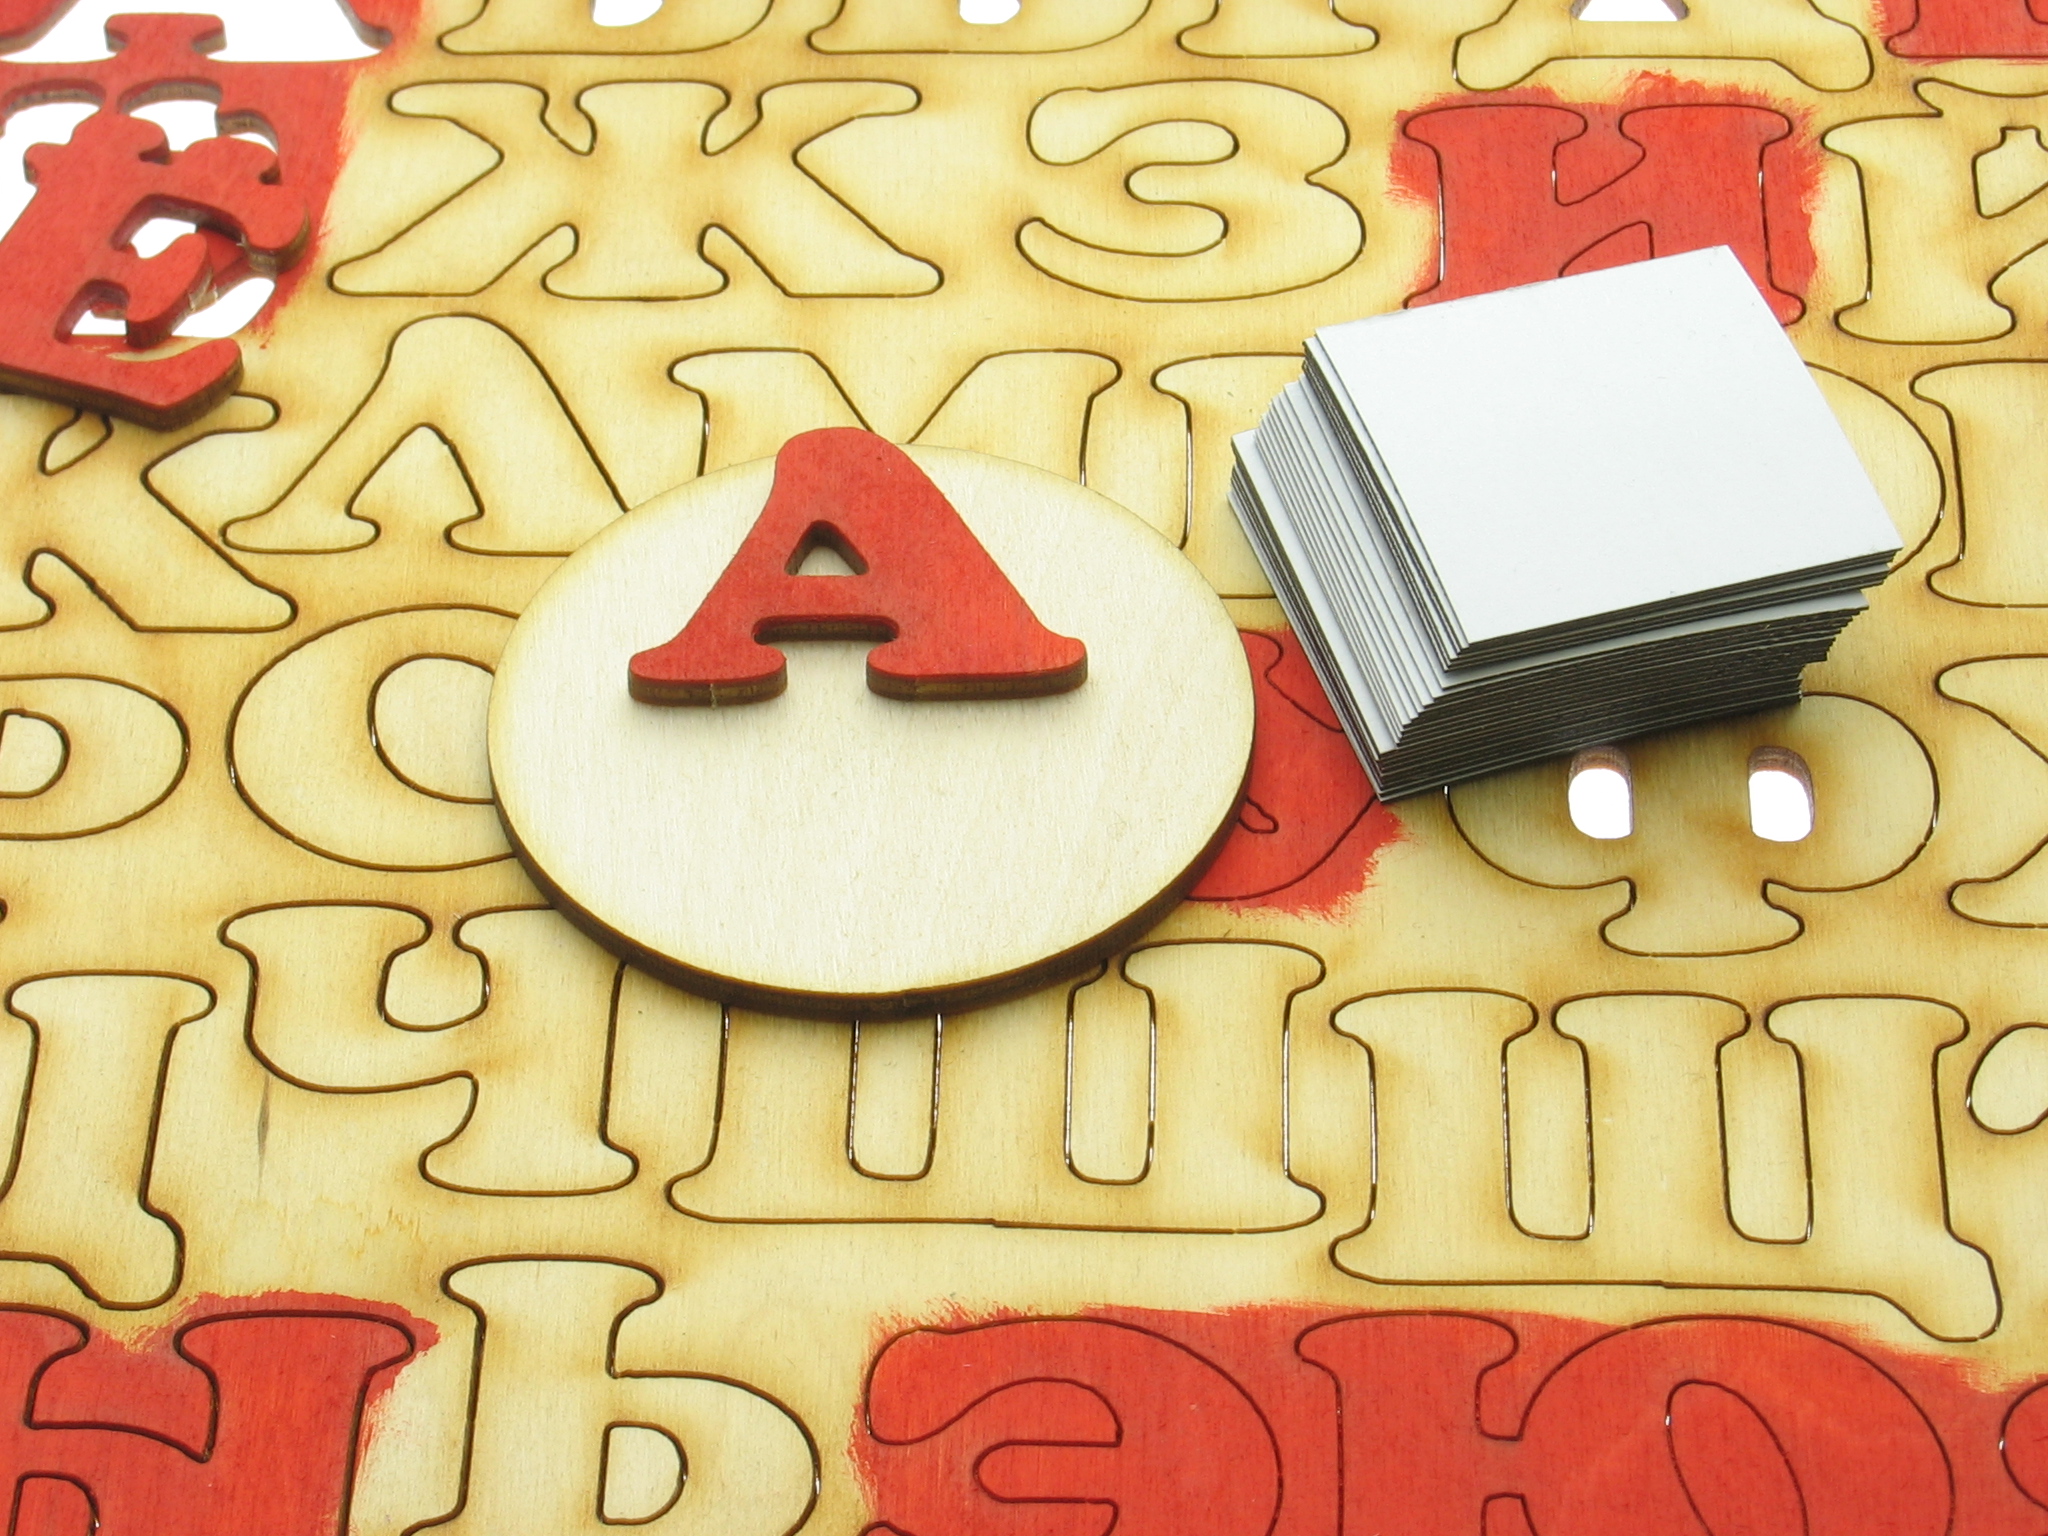 Фото-инструкция, изготовление деревянной магнитной азбуки своими руками от компании "Шоп Чилдрен Той".  Поделка раскраска для детей дошкольного возраста в детский сад.